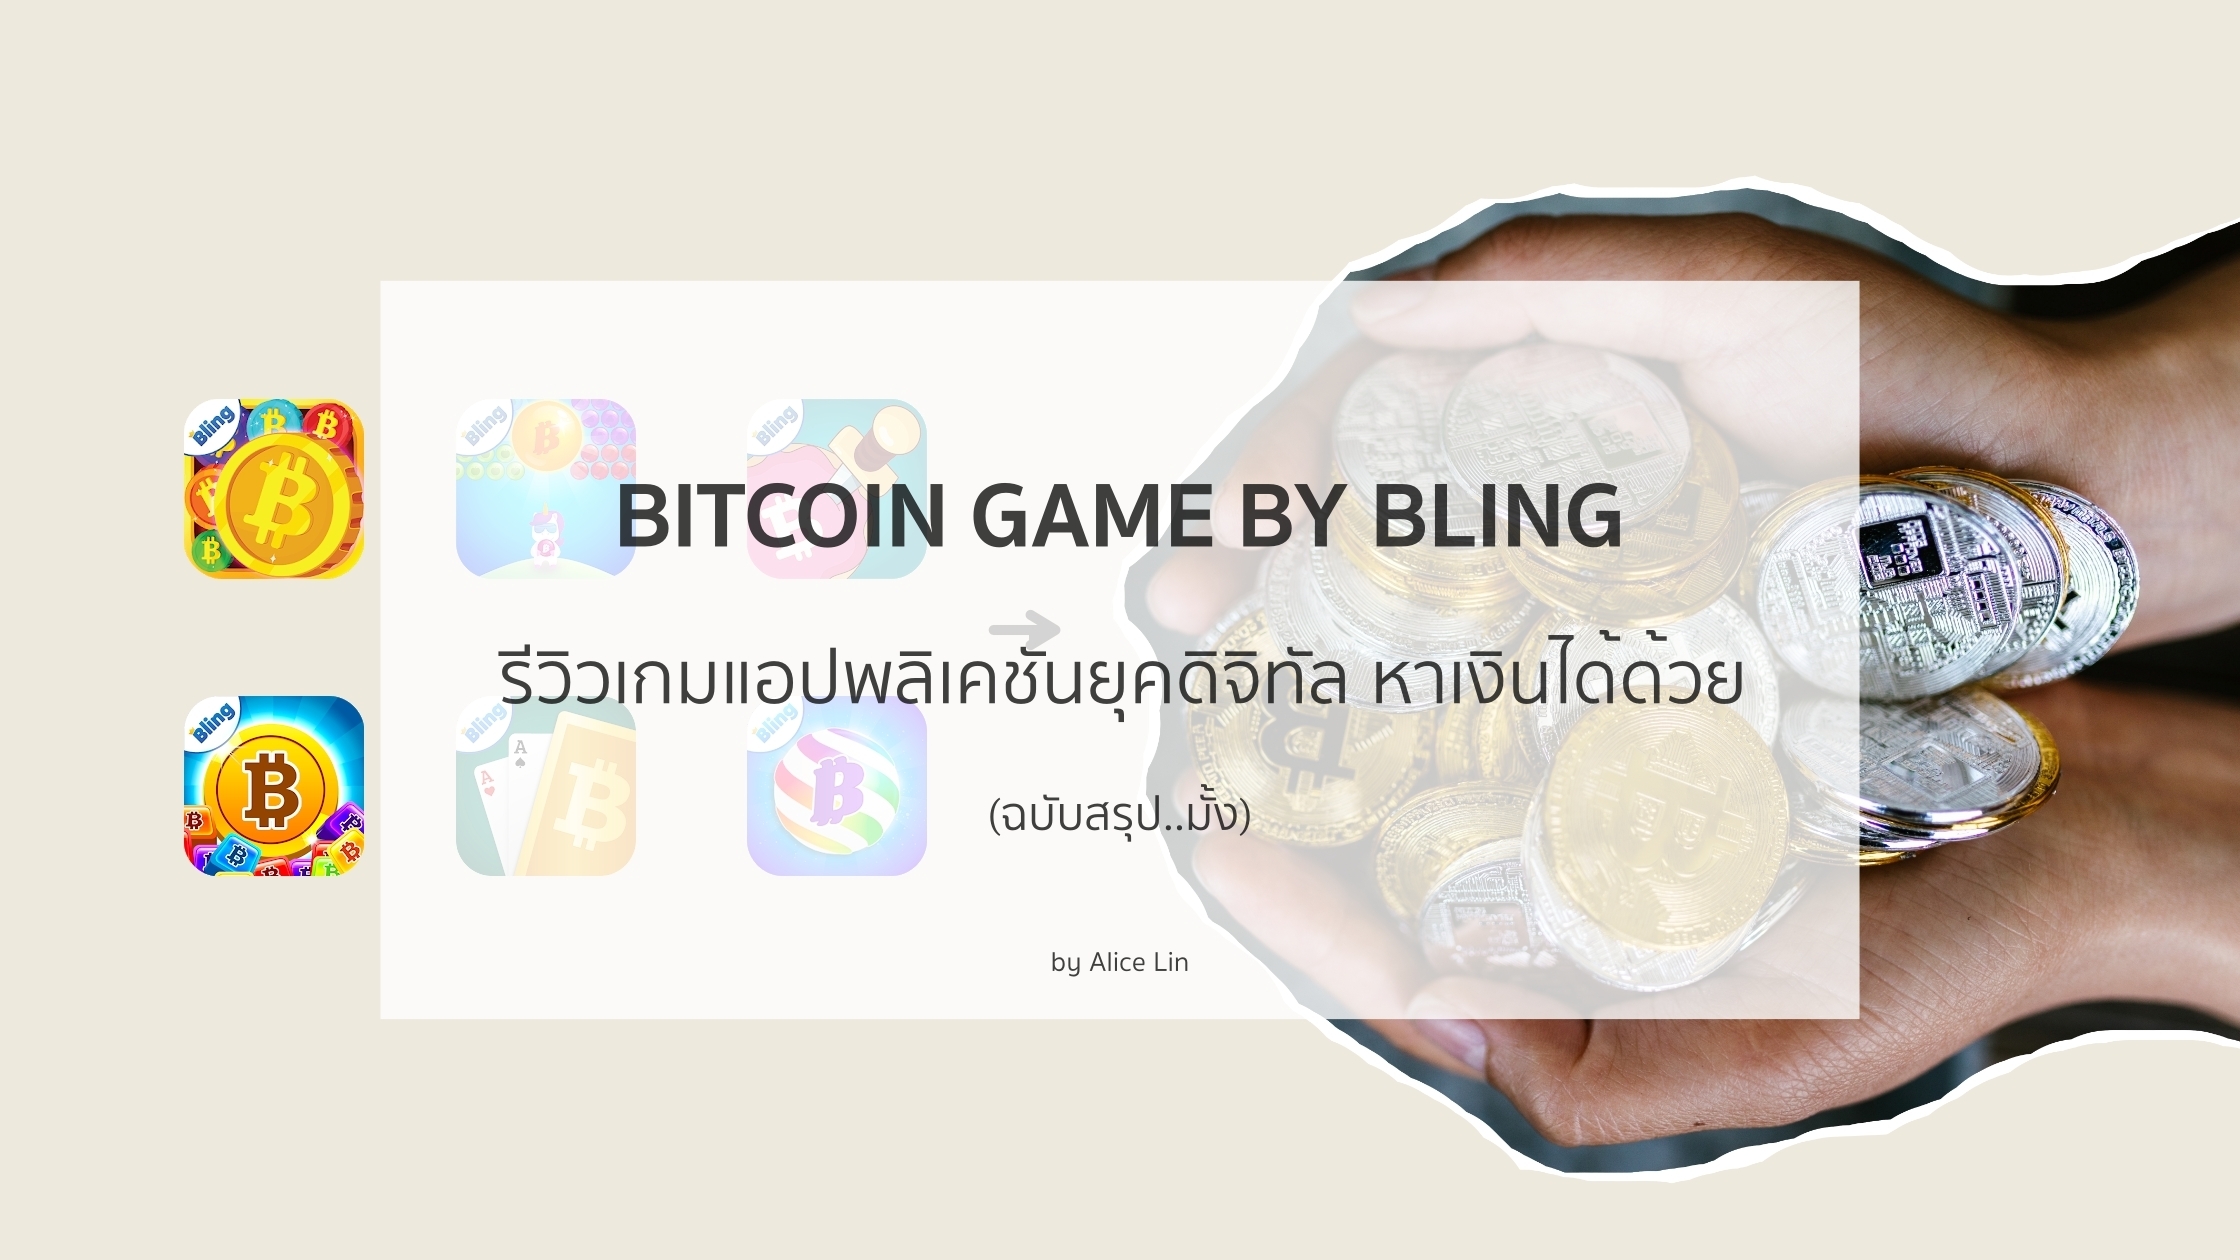 Bitcoin Game By Bling รีวิวเกมแอปพลิเคชันยุคดิจิทัล หาเงินได้ด้วย | Trueid  Creator